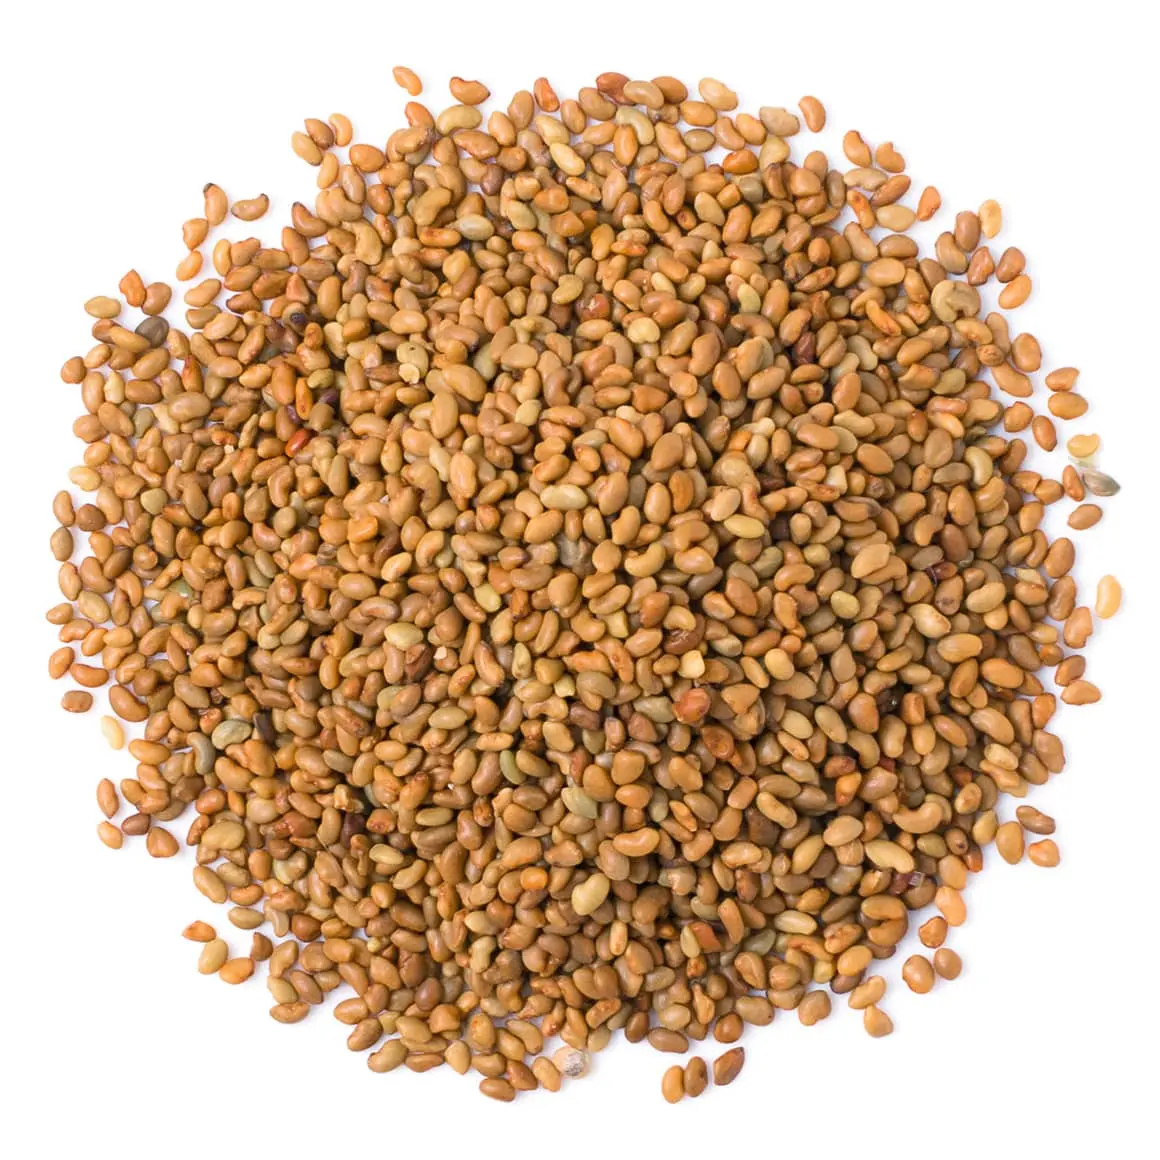 Semilla de Alfalfa Medicago Sativa, semilla de Alfalfa de calidad prémium que ayuda a reducir el colesterol